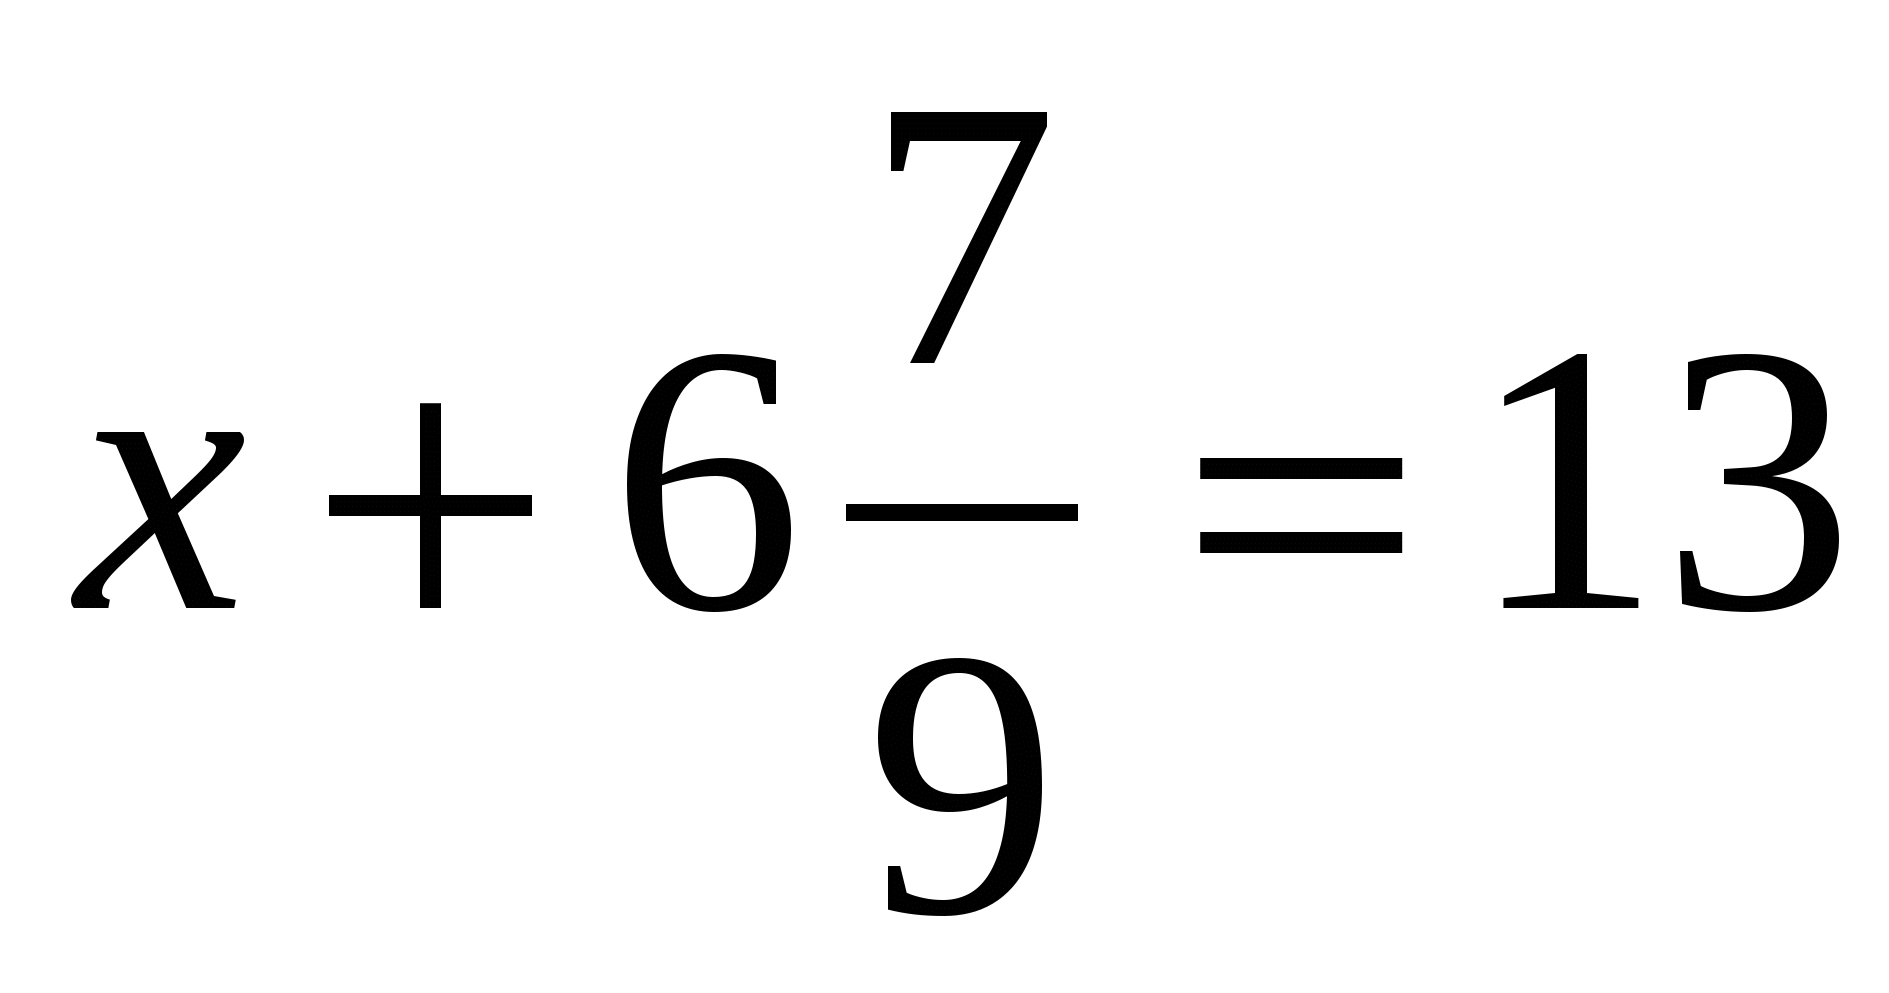 Разработка урока по математики для на тему Сложение и вычитание смешанных чисел (5 класс)